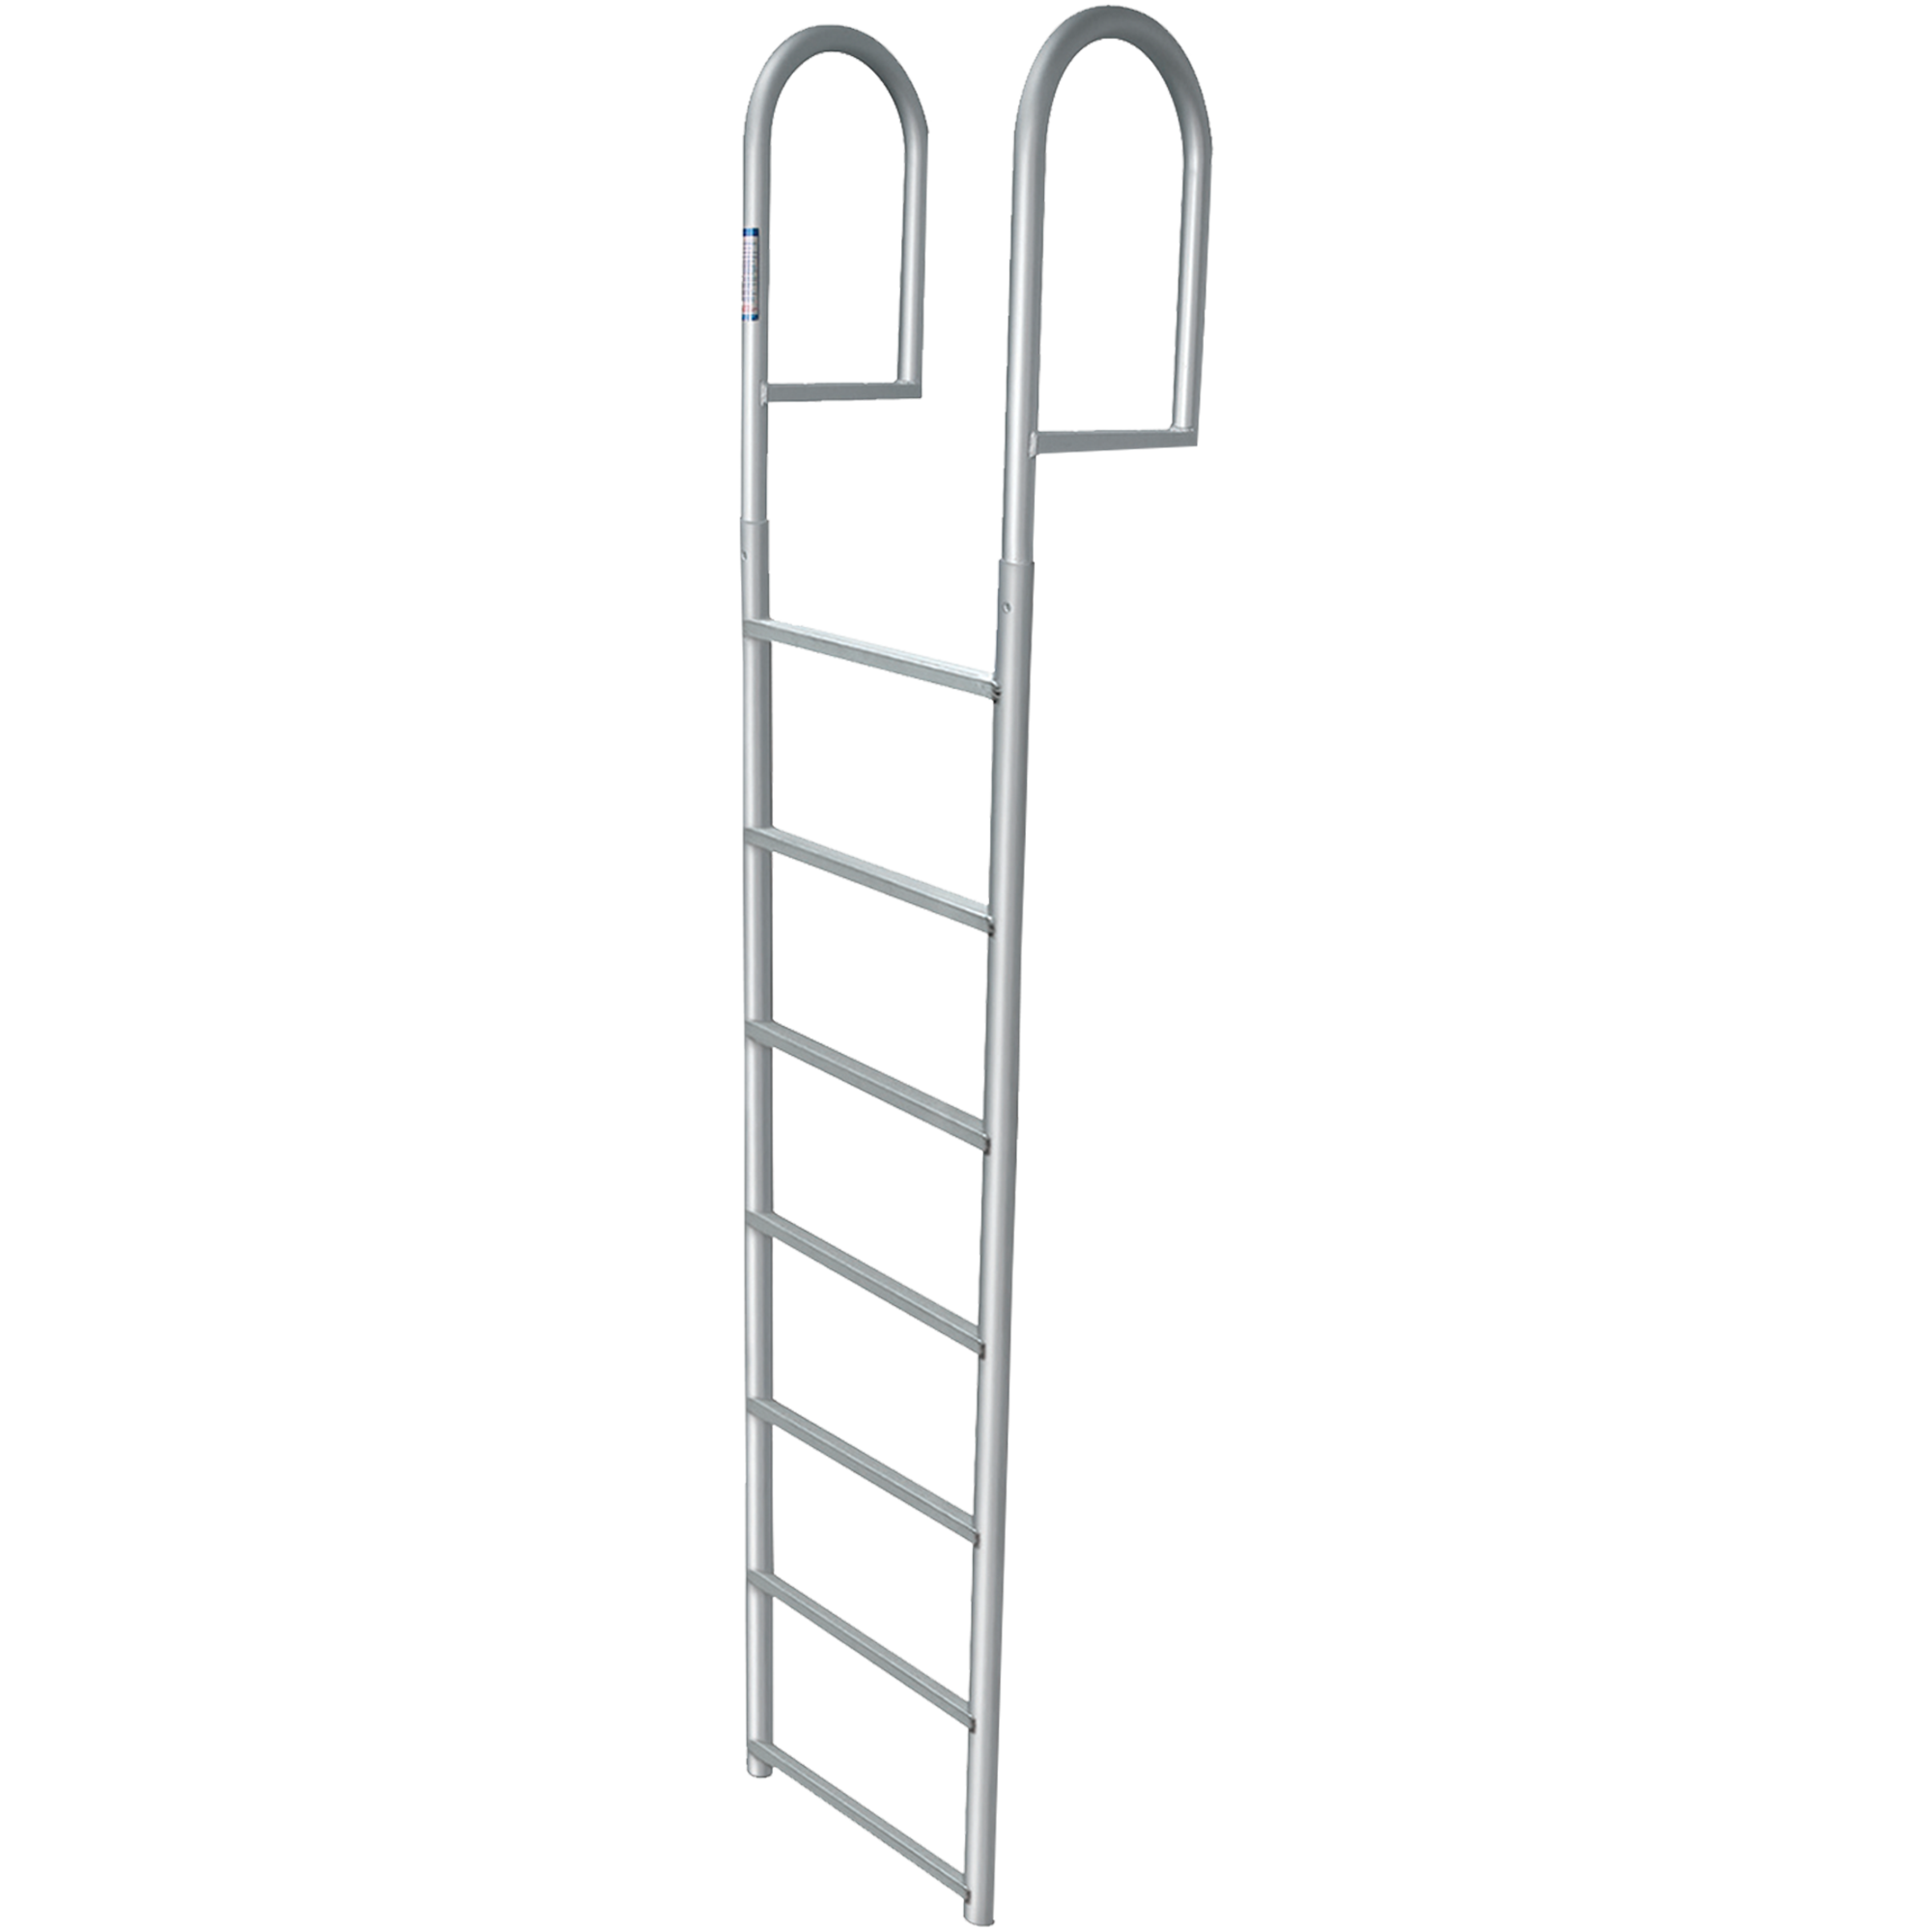 7 Rung Aluminum Ladder - Standard 2" Wide Step